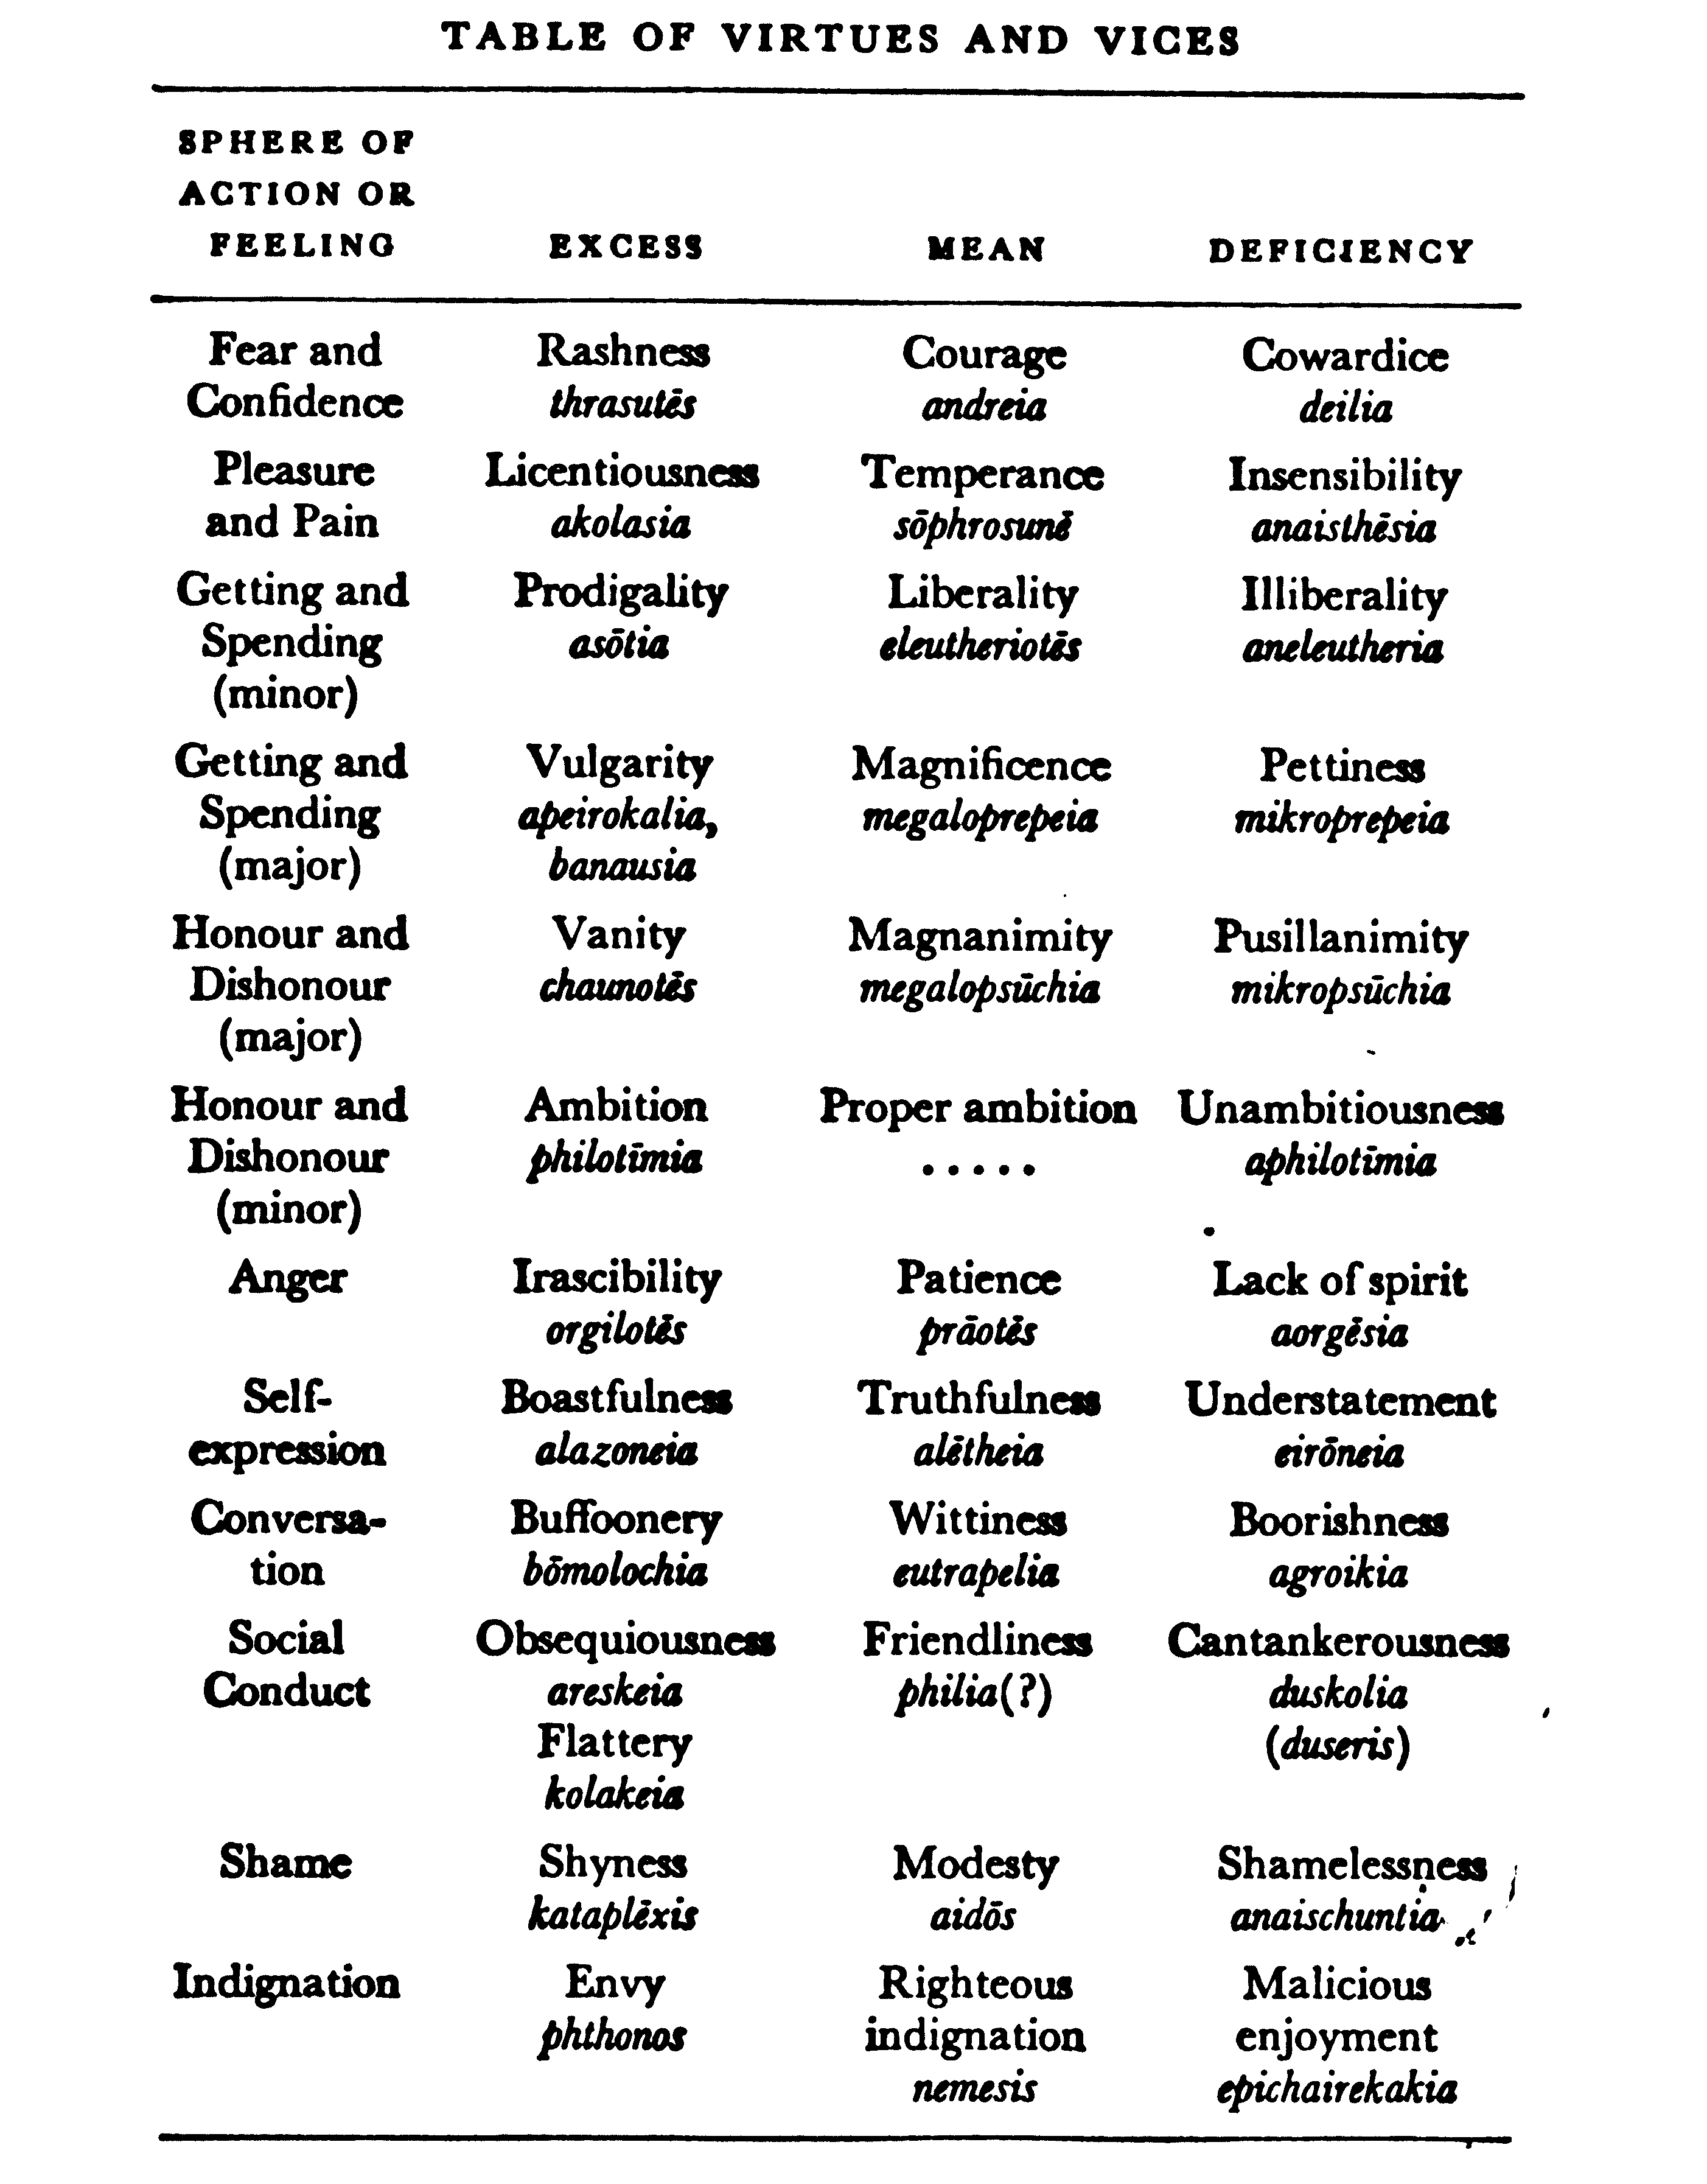 Catholic virtues list